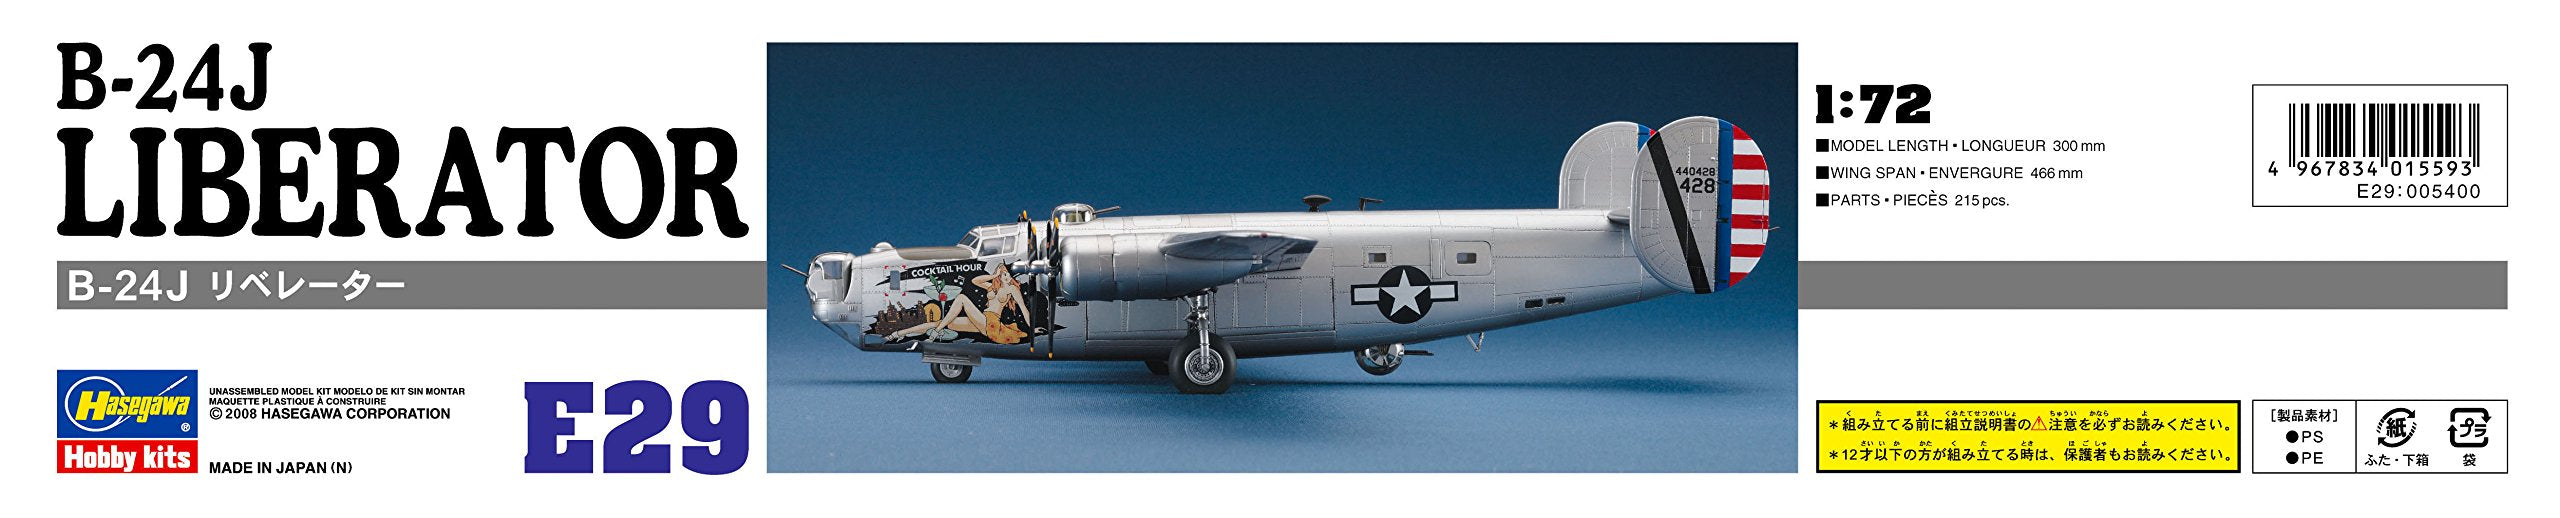 HASEGAWA 1/72 B-24J Liberartor U.S. Army Air Force Bomber Plastic Model